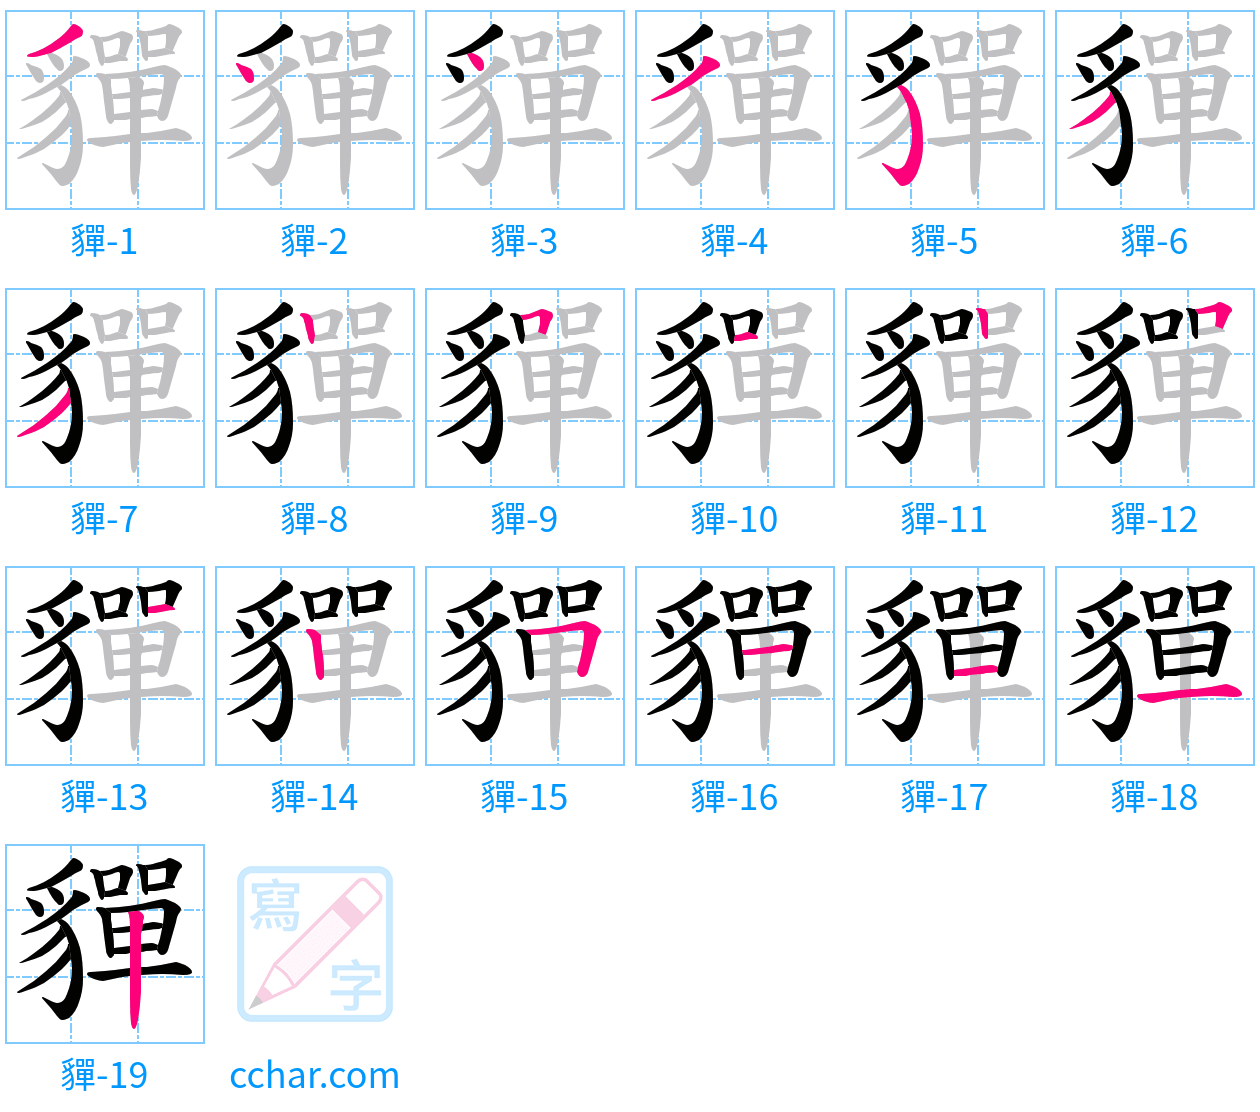 貚 stroke order step-by-step diagram